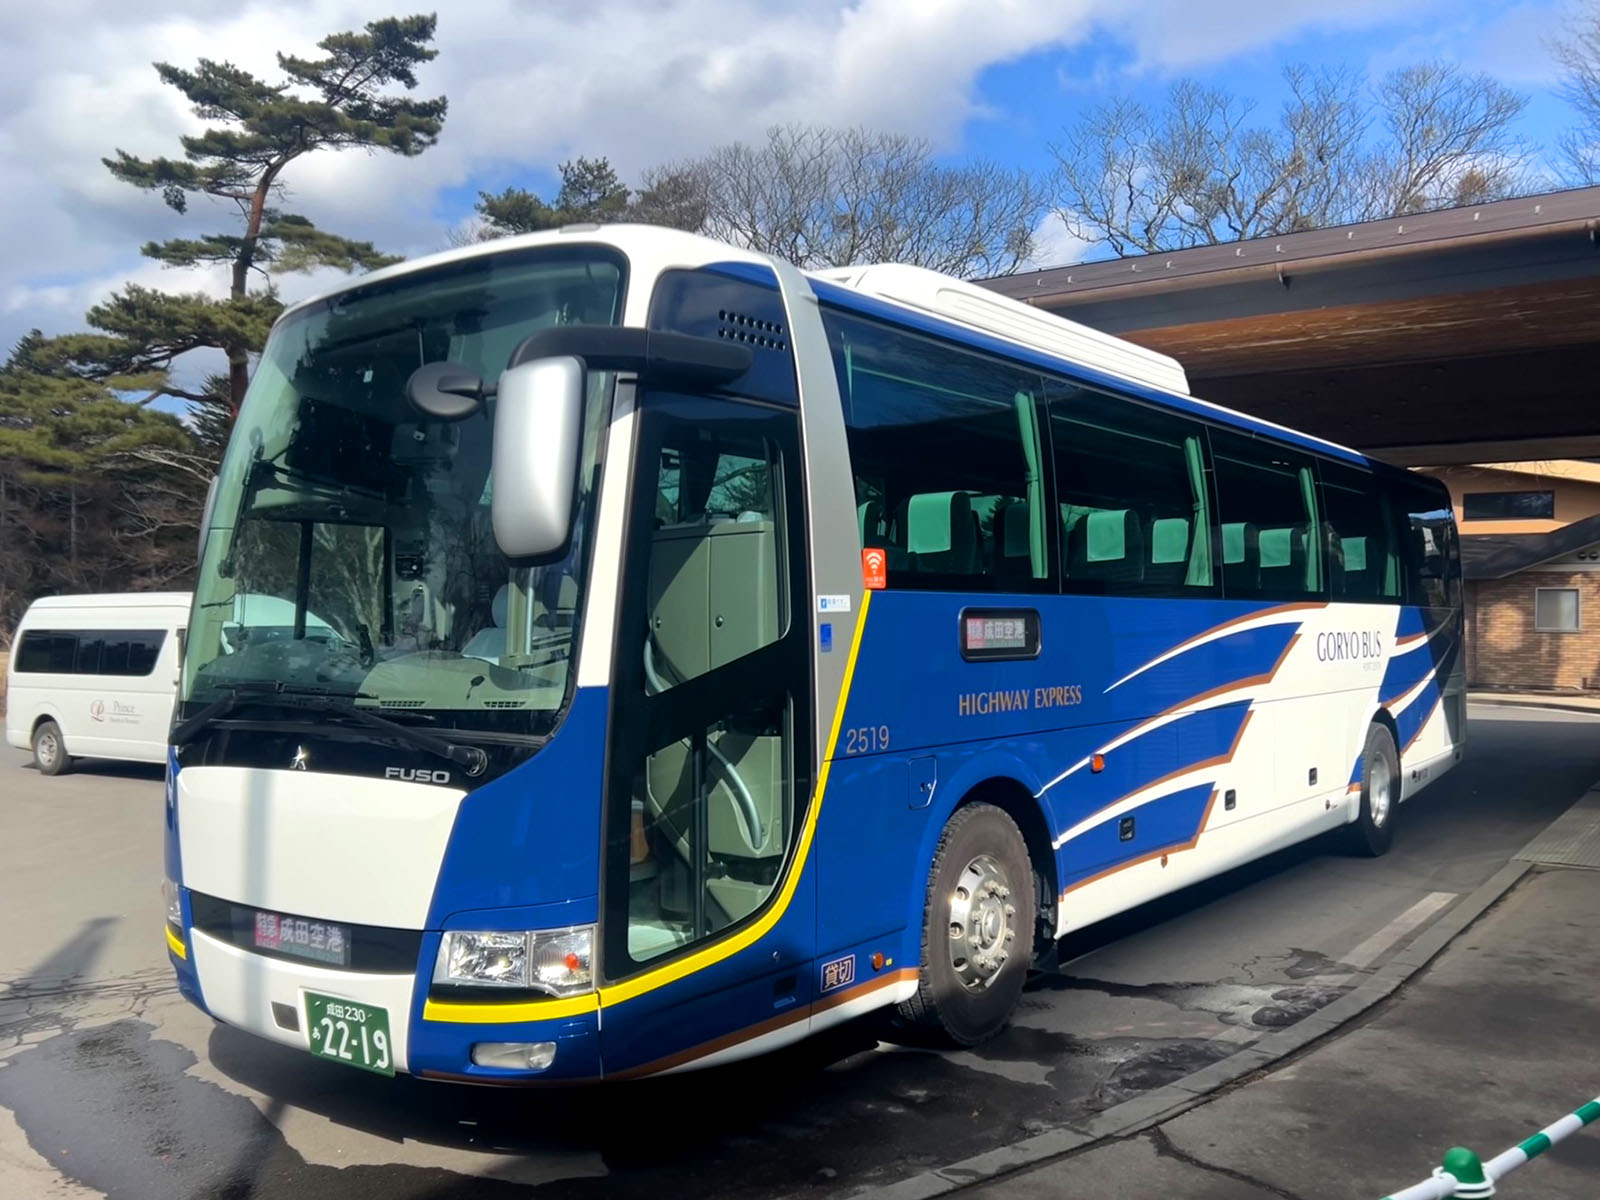 「軽井沢方面 - 成田国際空港」間を運行する高速バスです。